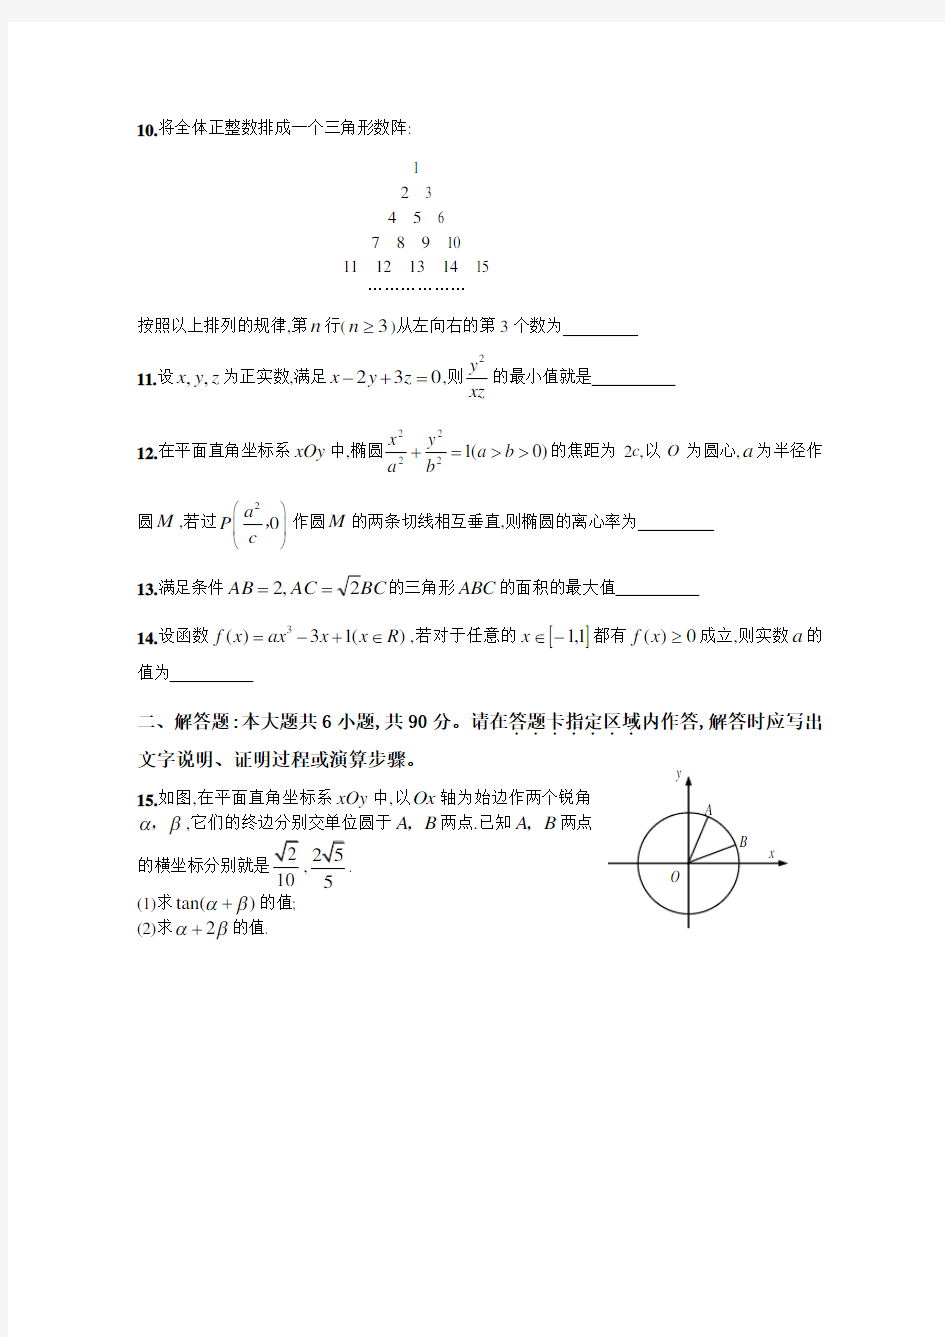 2008年高考试题理科数学江苏卷及答案解析